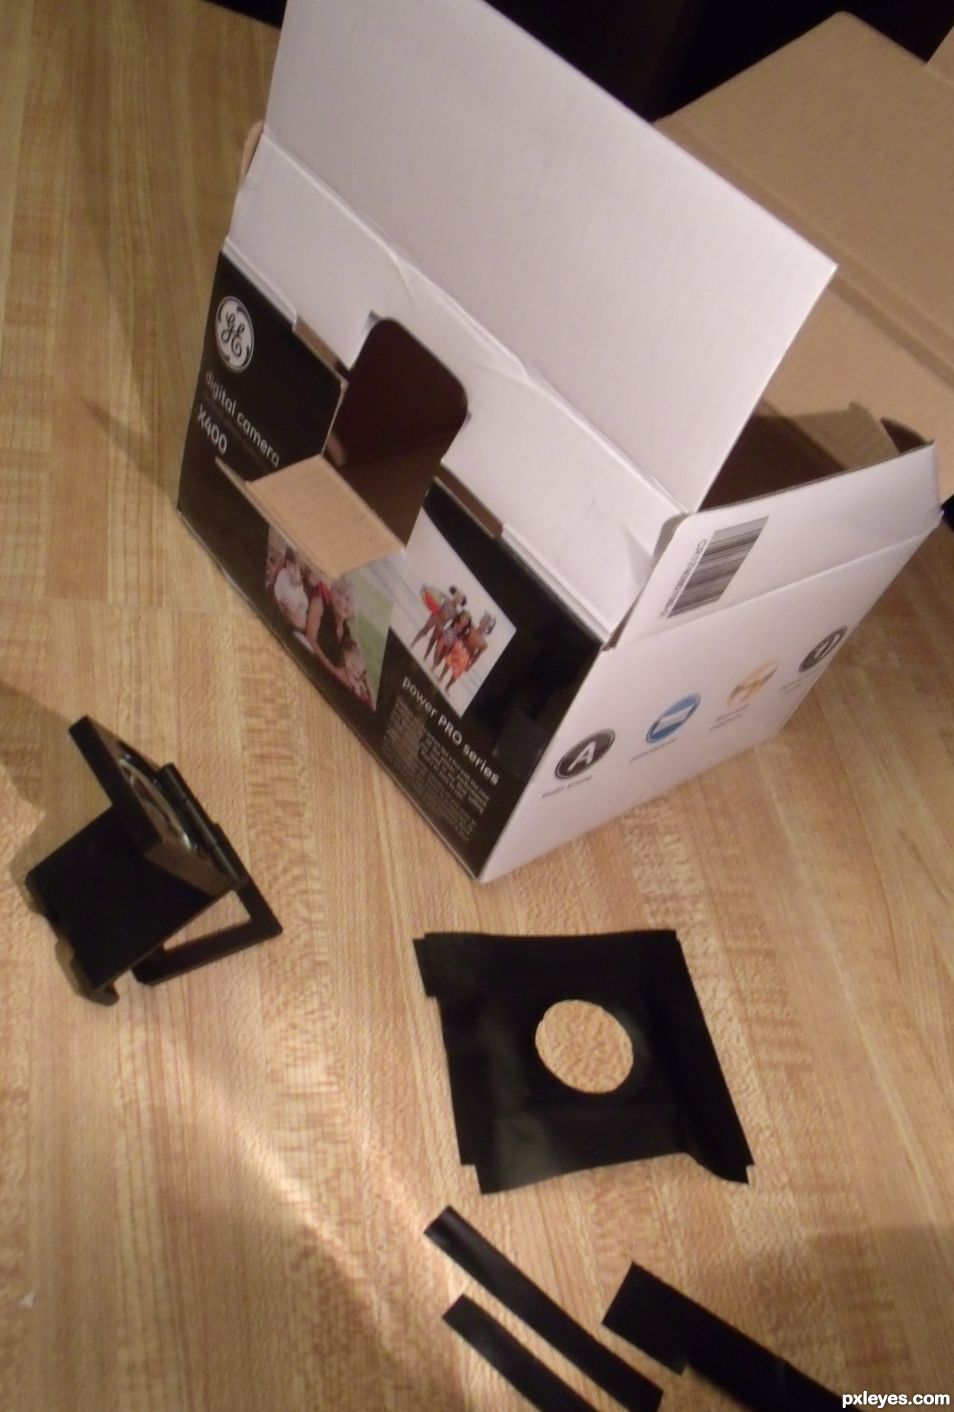 Creation of Camera Box Box Camera: Step 3